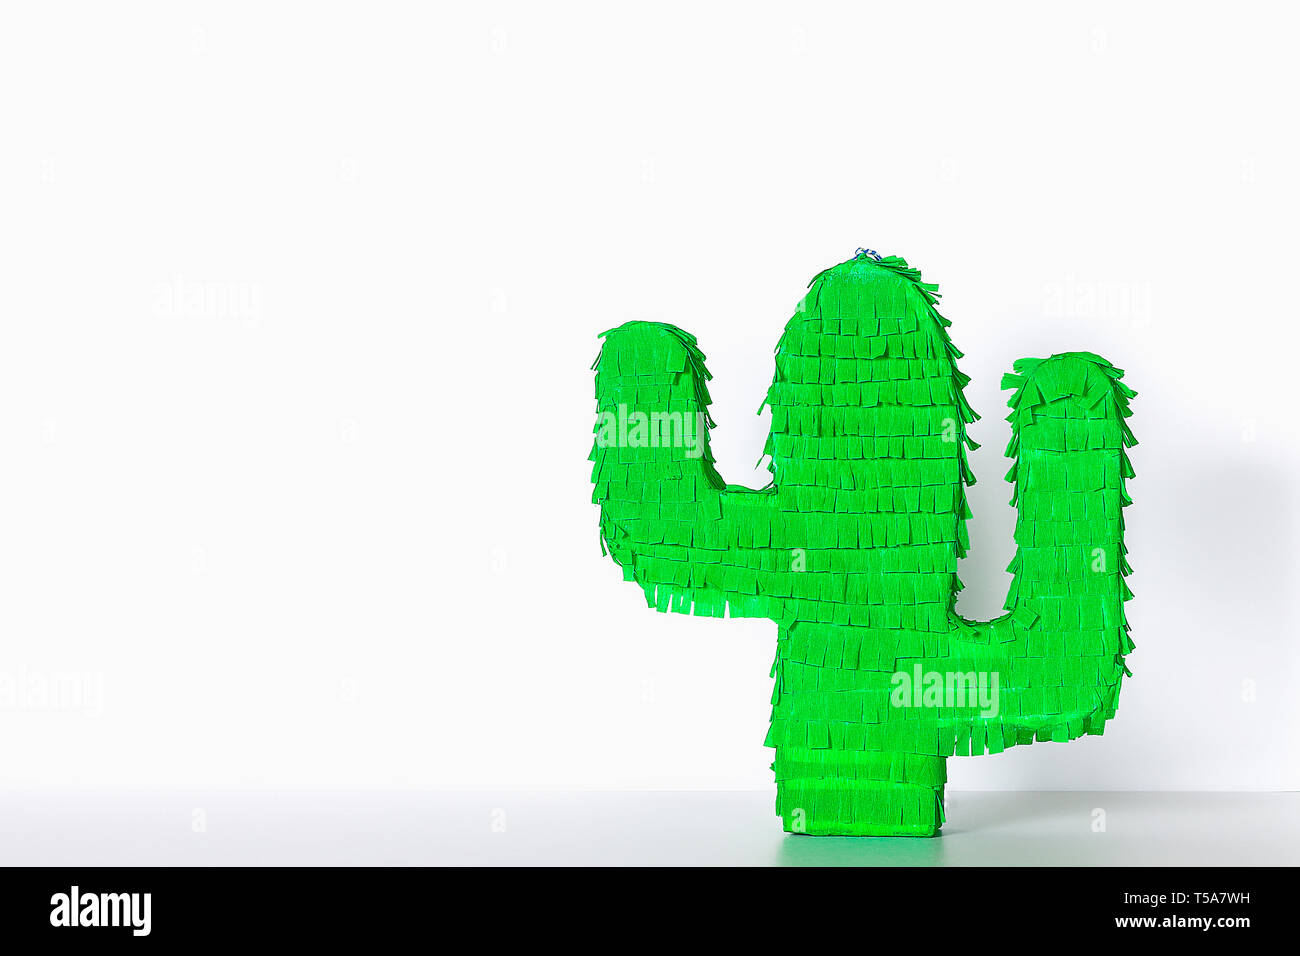 Cinco de Mayo Diy Pinata mexicaine Cactus en carton et papier crépon vos propres mains sur un fond bleu. Idée cadeau, décoration, jeu Le Cinco de Mayo. L'étape Banque D'Images